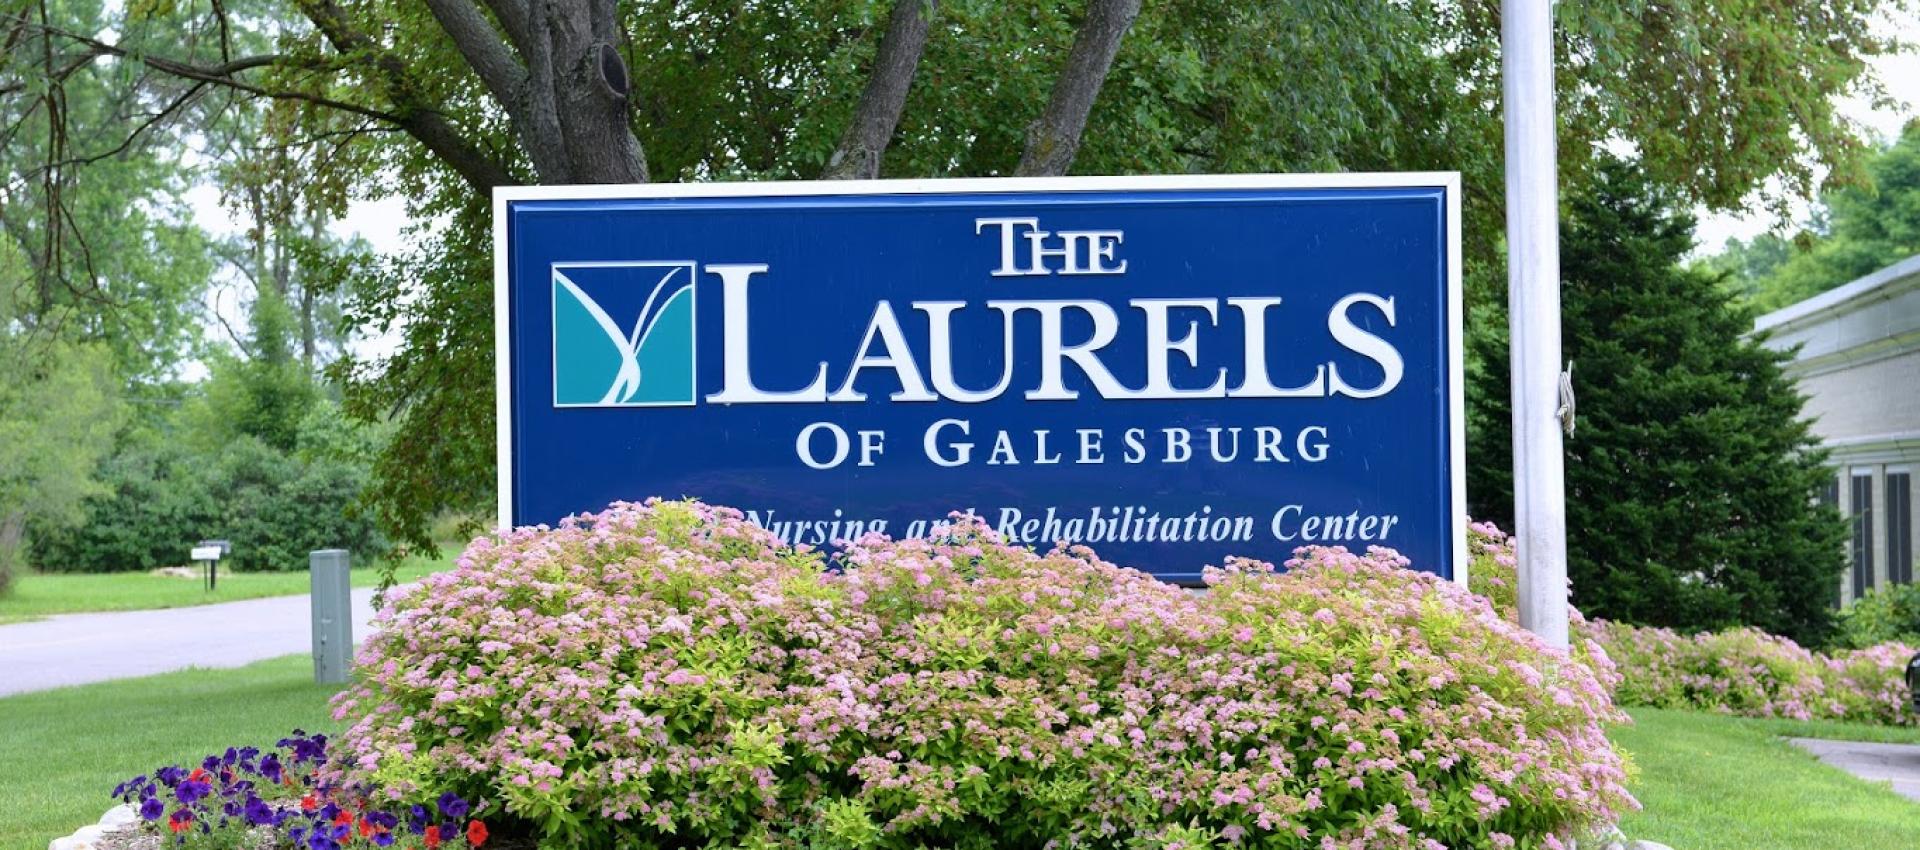 The Laurels of Galesburg